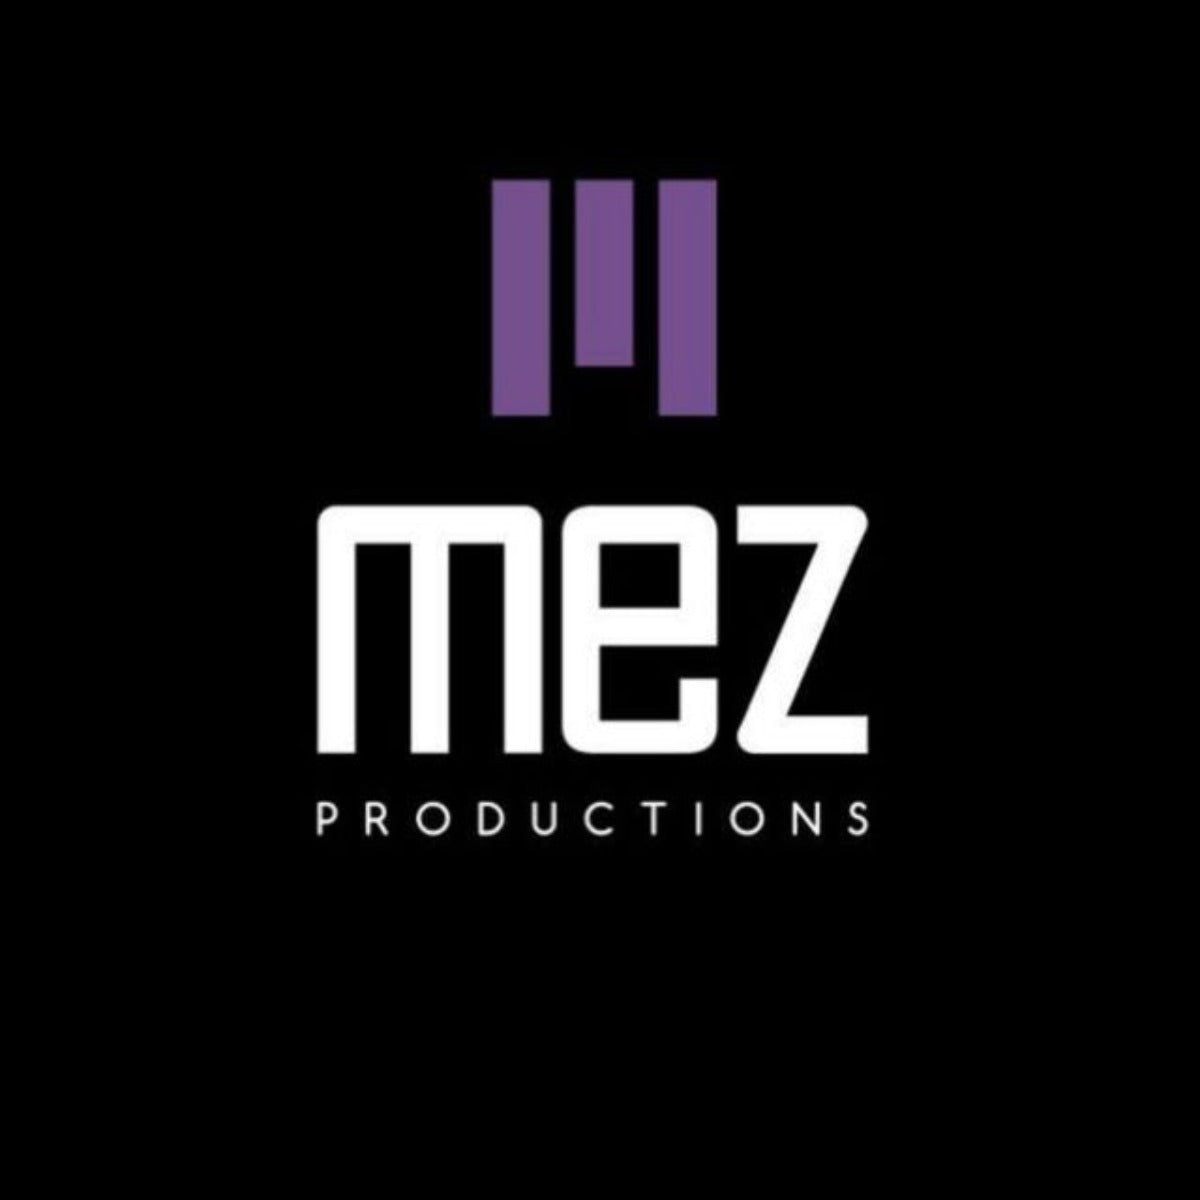 Sruly Altman &amp; MEZ Production 27 ביוני '22 קאהן